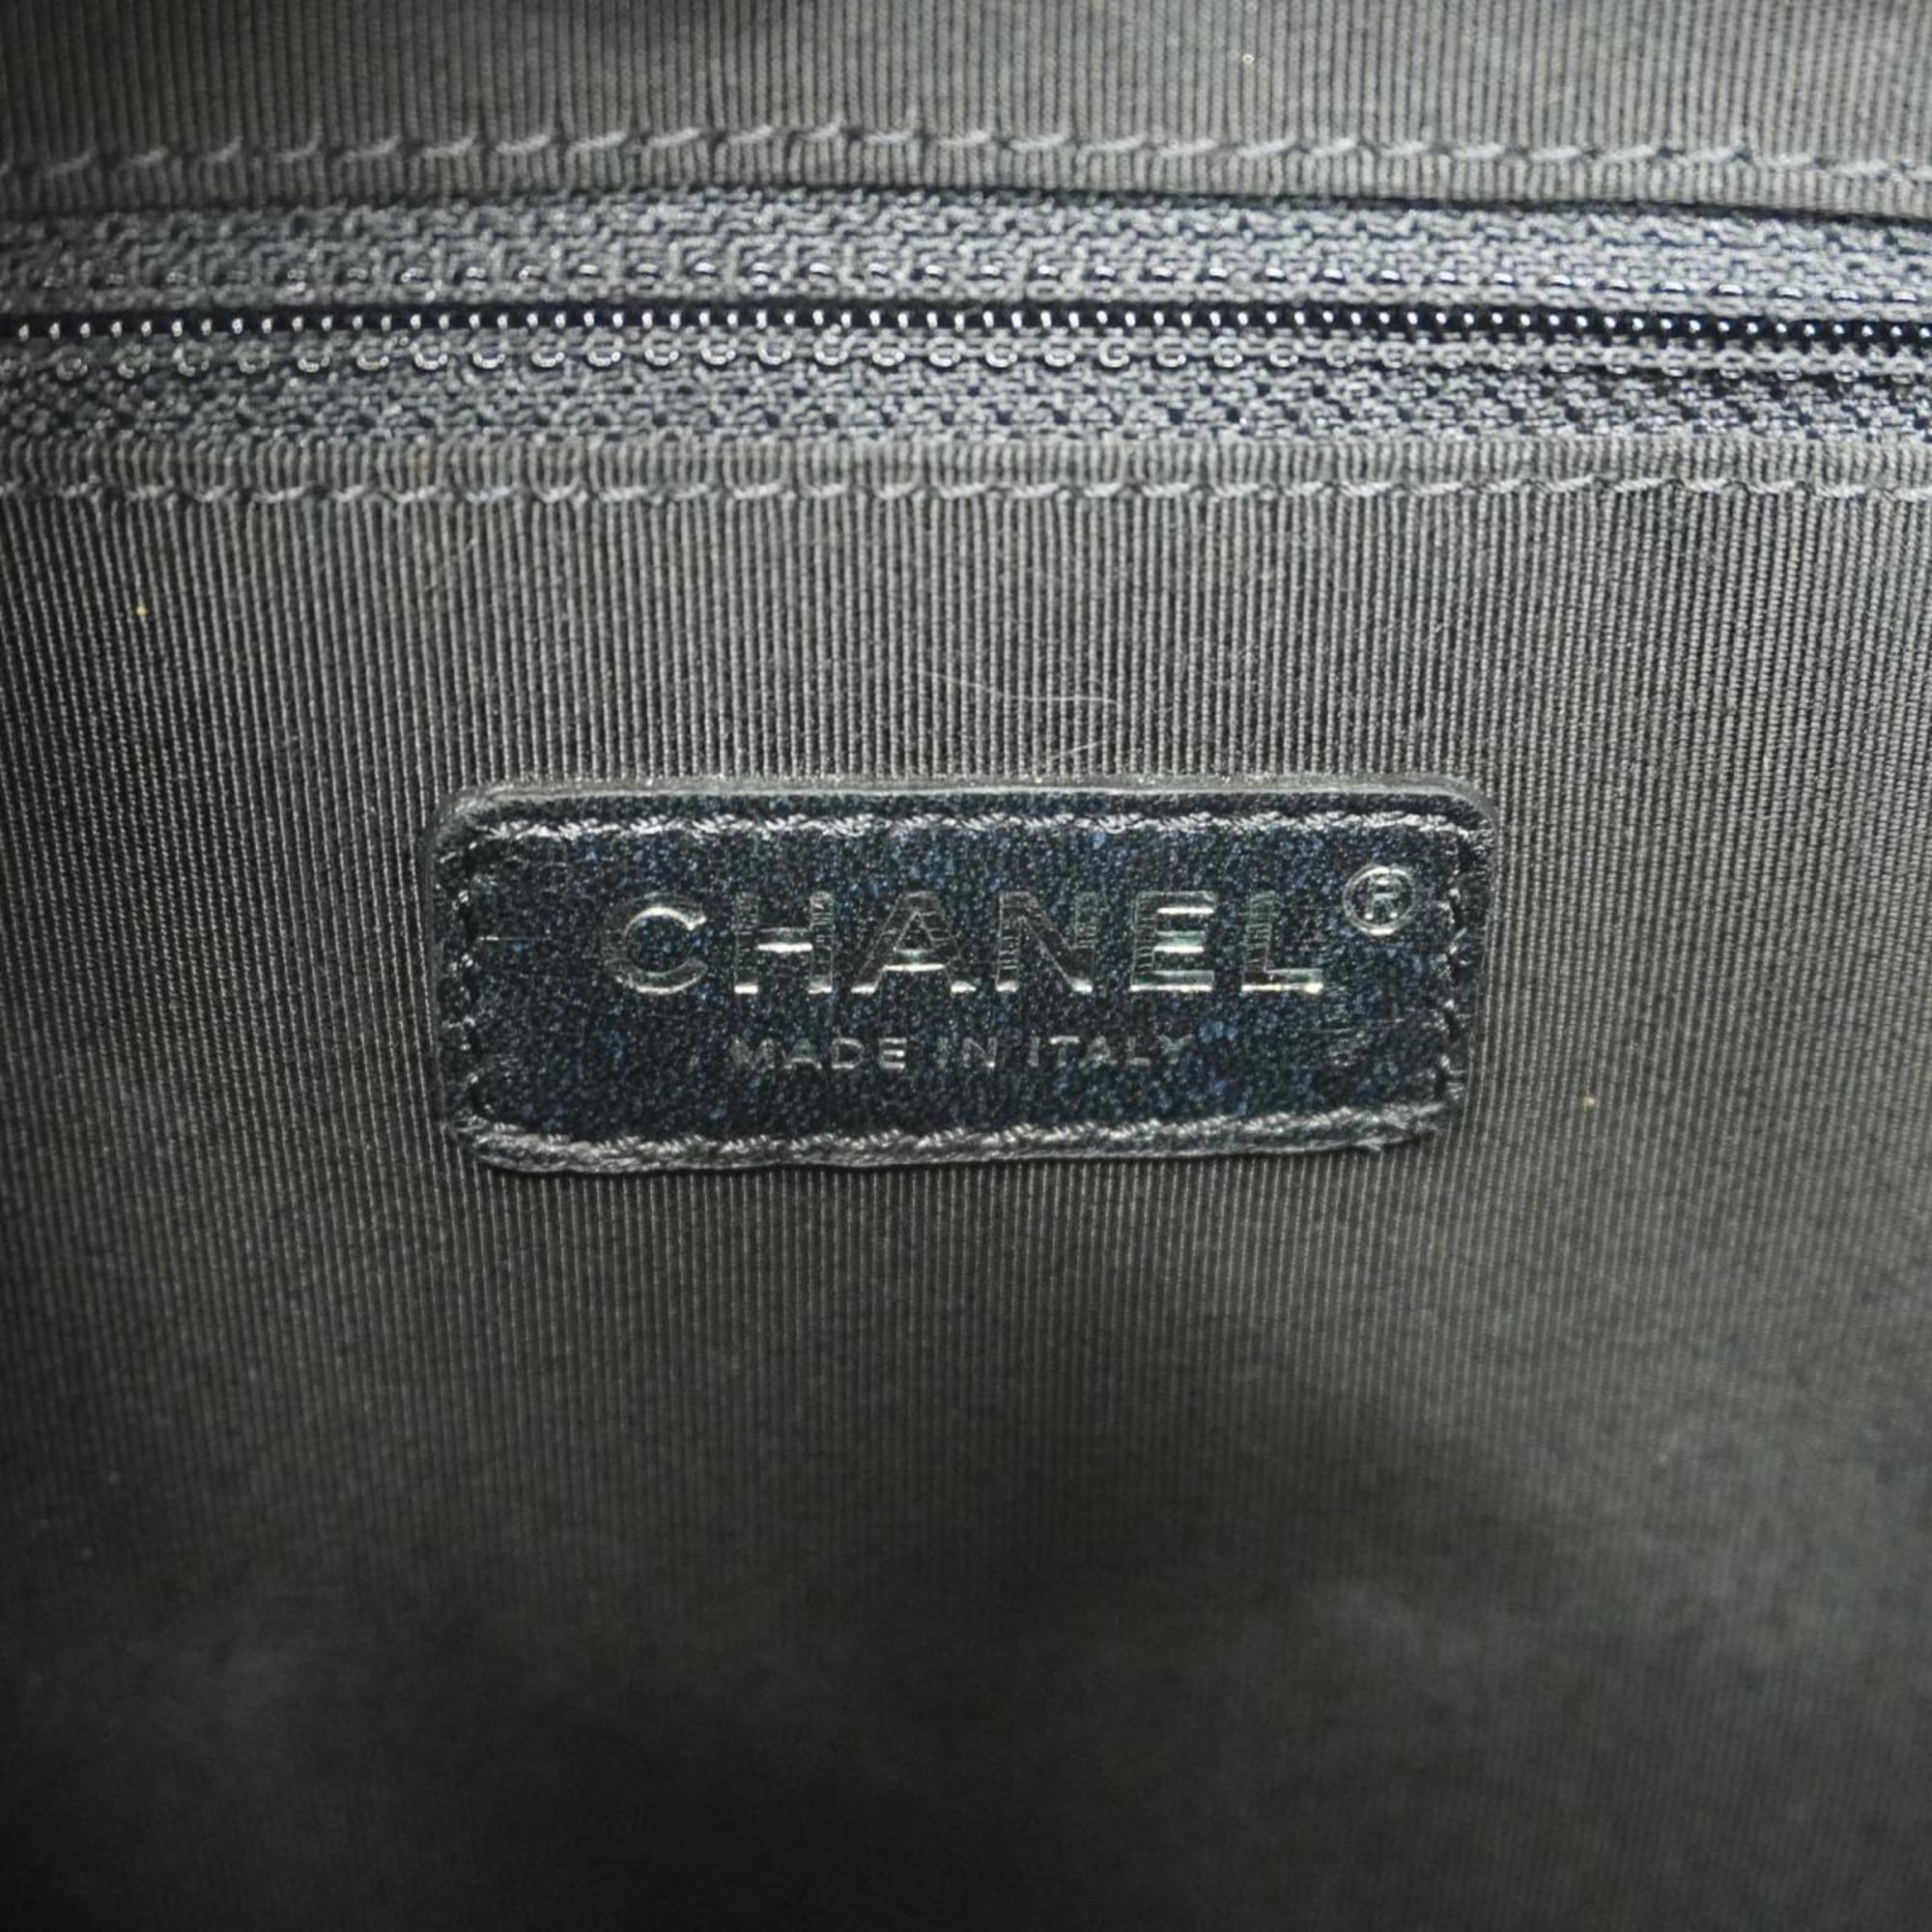 シャネル(Chanel) シャネル ショルダーバッグ マトラッセ ガブリエル チェーンショルダー レザー ブラック ゴールド    レディース